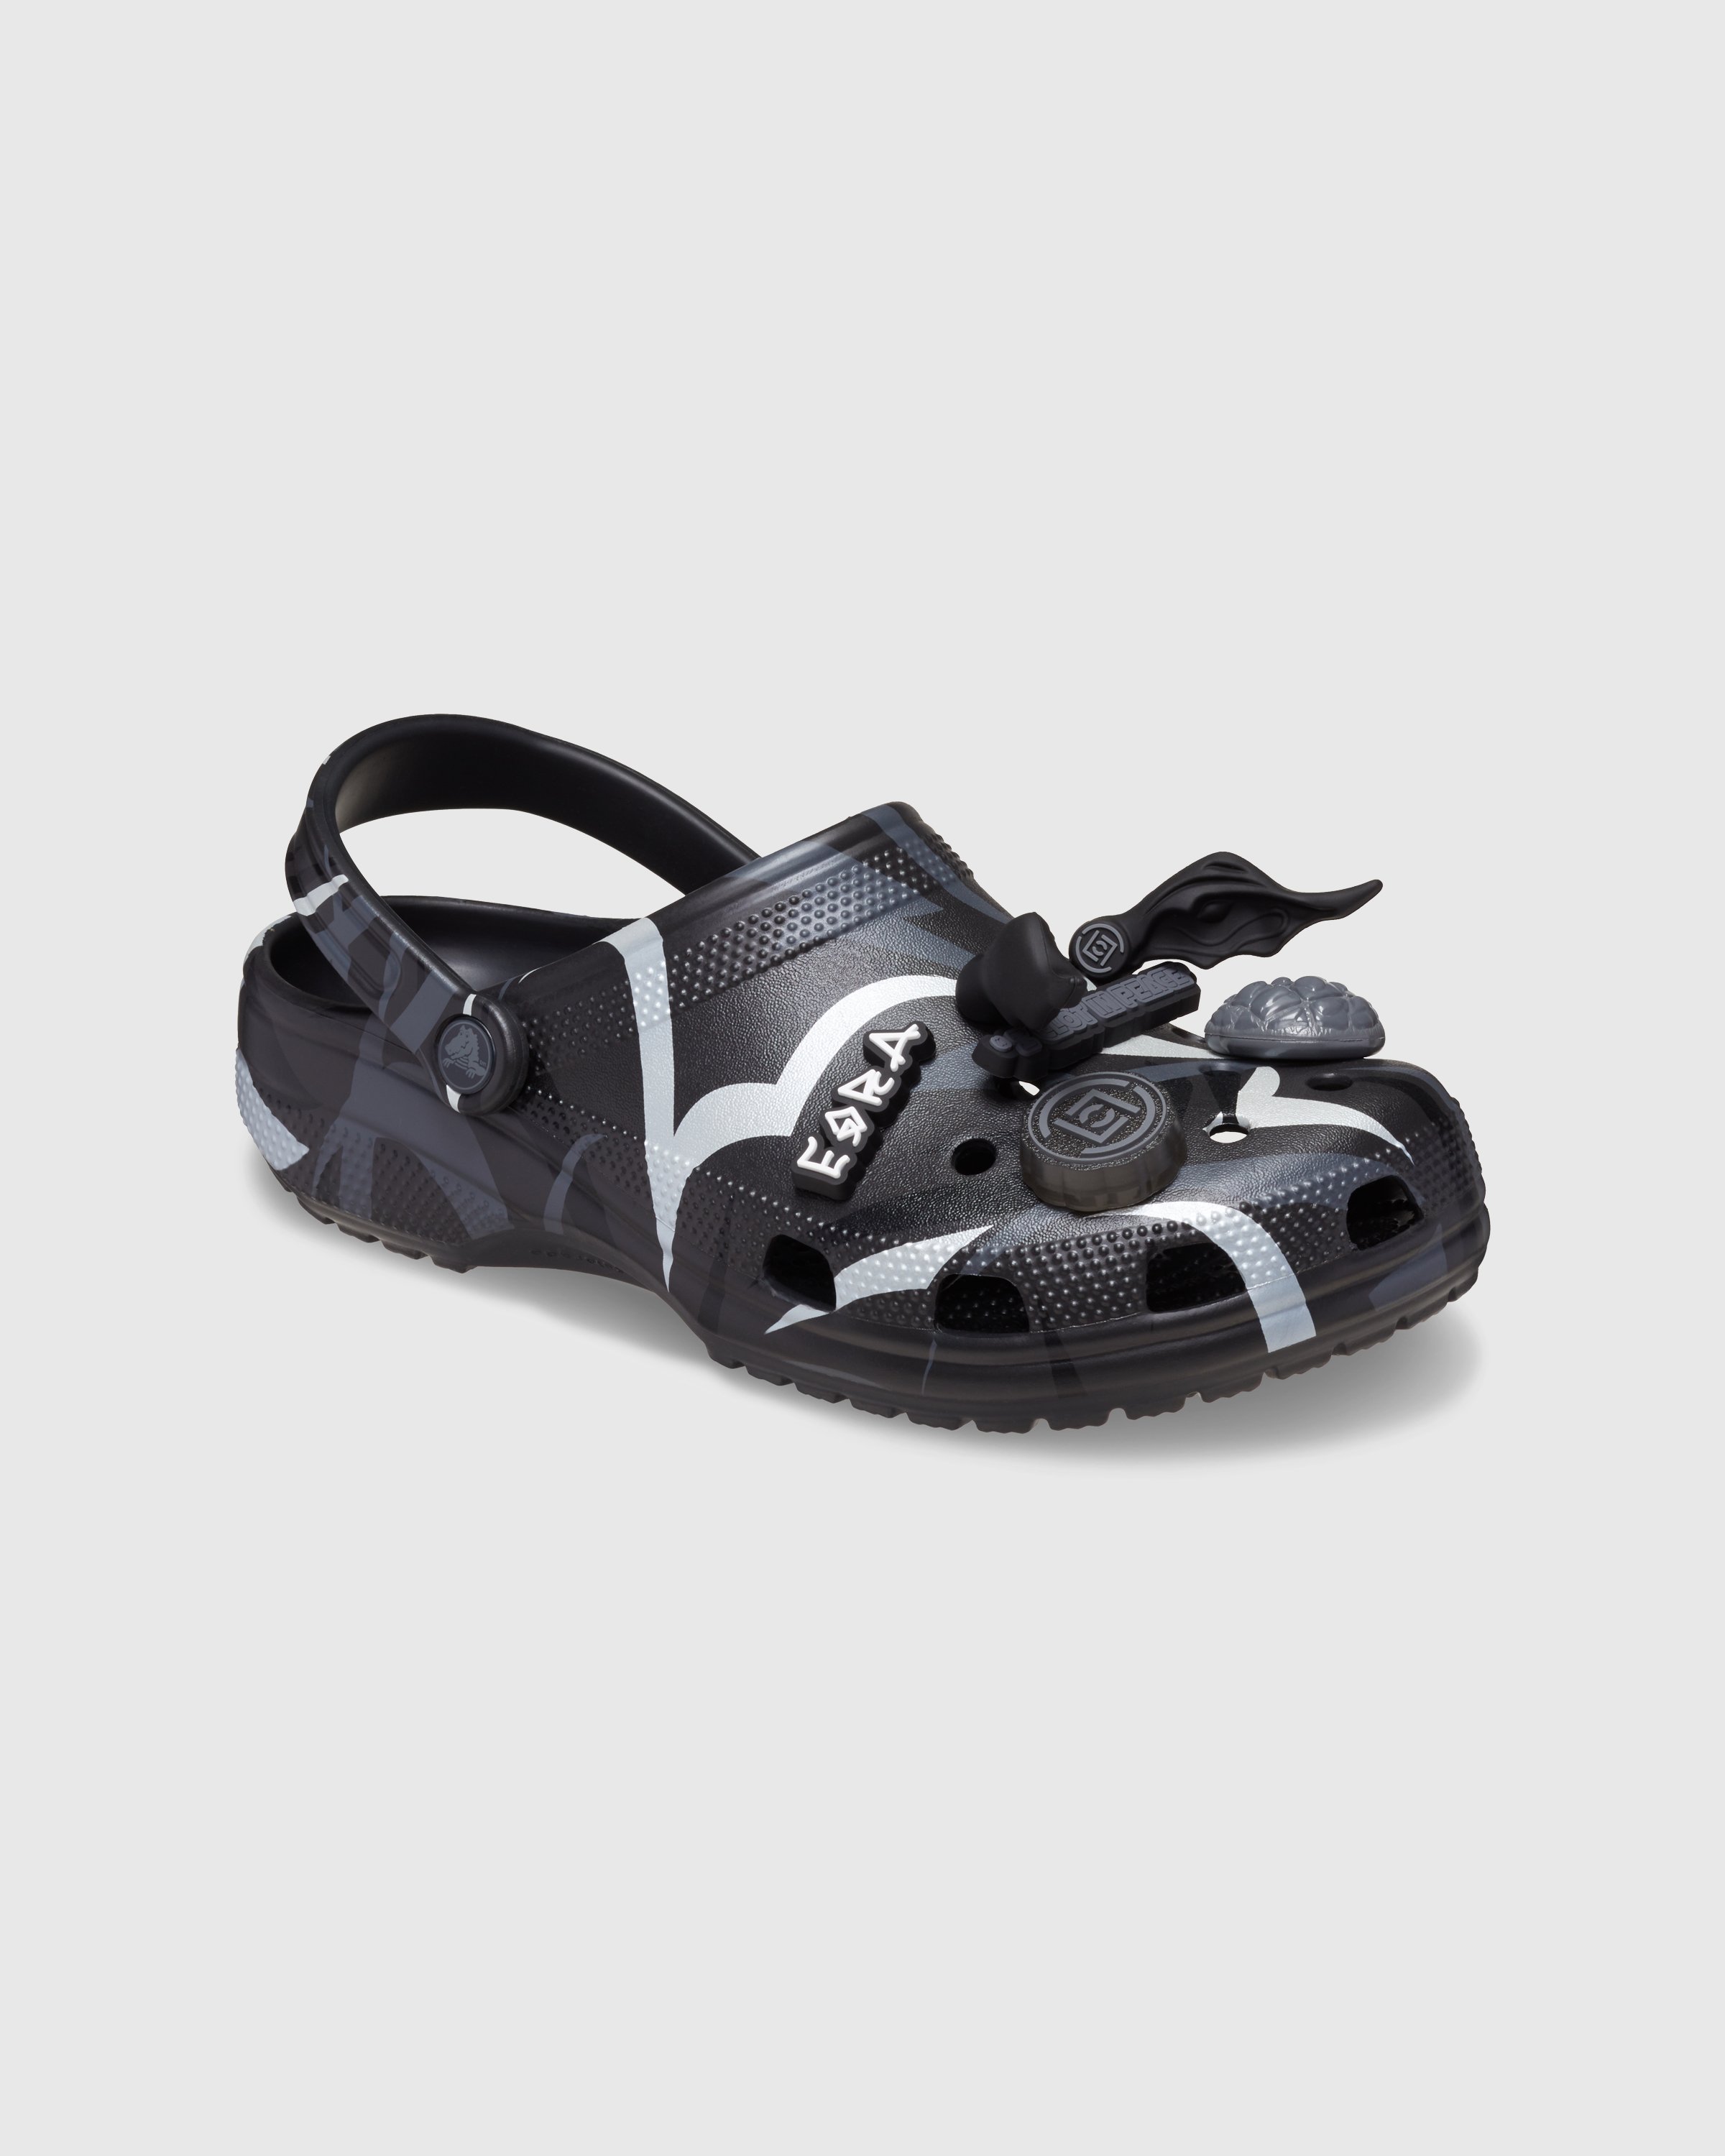 CLOT x Crocs - Classic Clog Black - Footwear - Black - Image 3